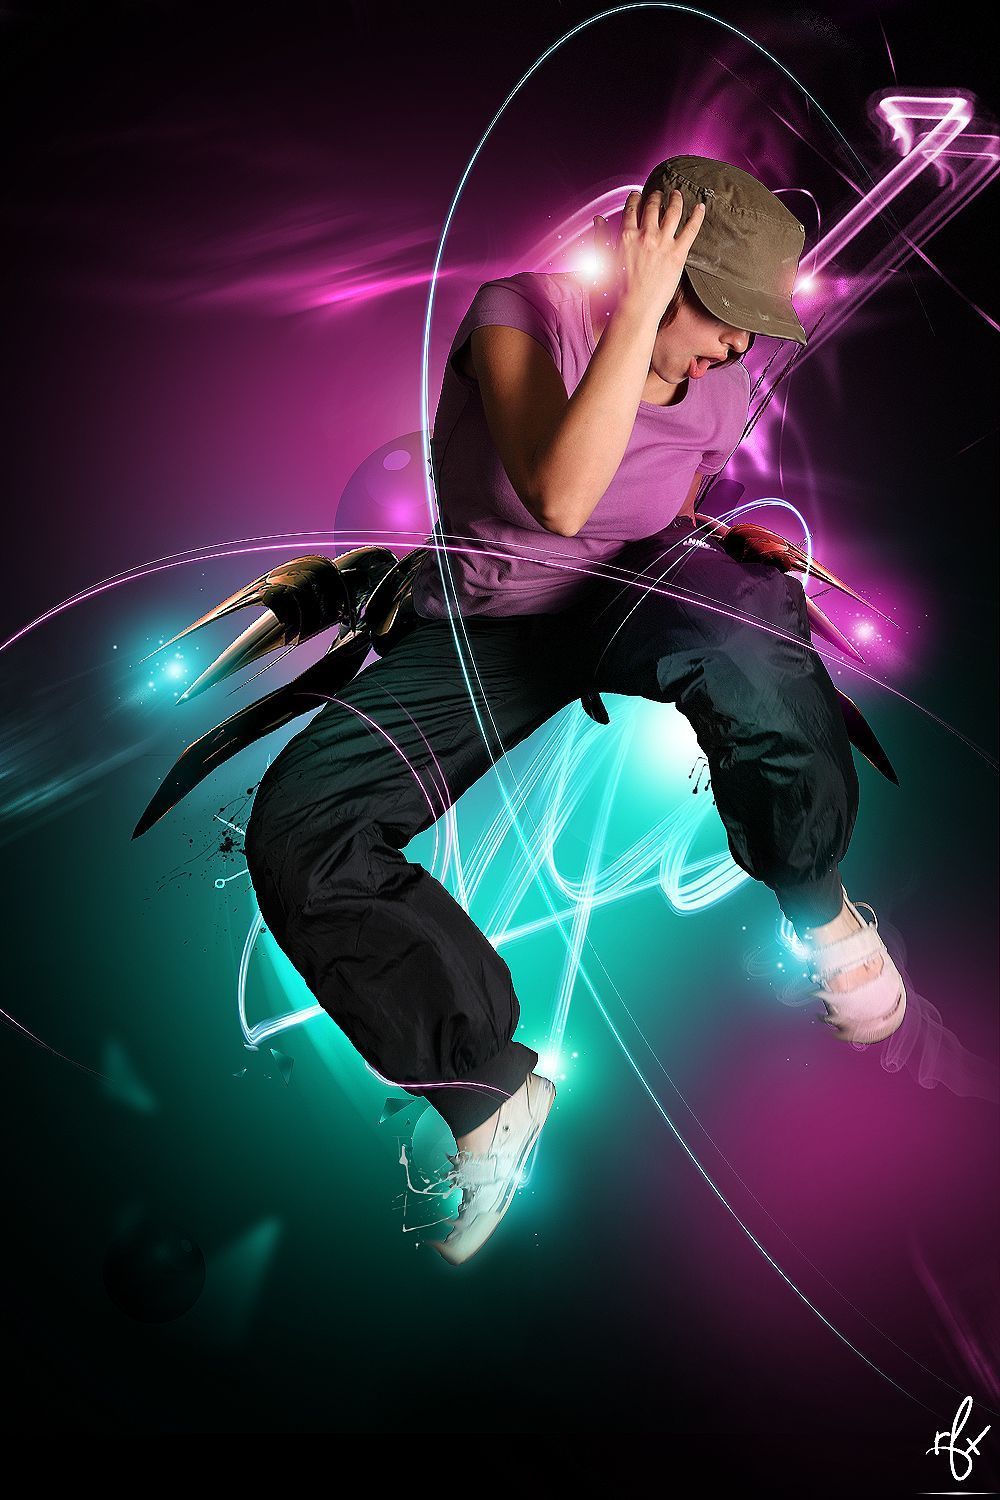 Hip Hop Dance Wallpaper. Dance wallpaper, Dance background, Hip hop dance